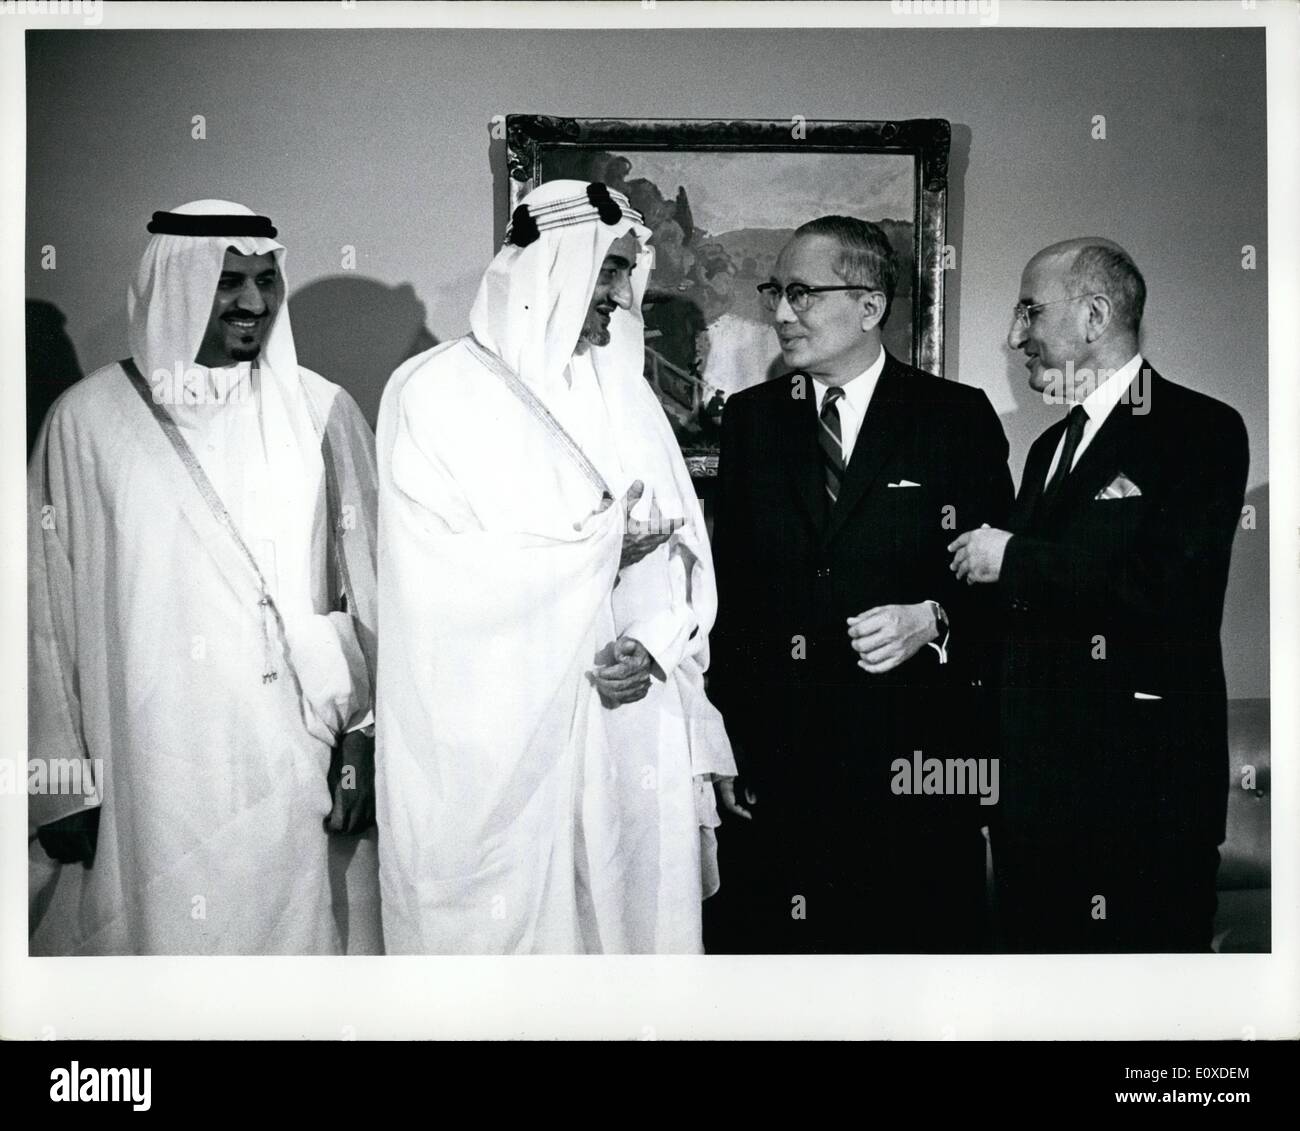 Jun 06, 1966 - Su Majestad Faisal Bin Abdulaziz visita la sede de la ONU: Su Majestad el Rey Faisal Bin Abdulaziz, de Arabia Saudita, realizó una visita oficial a la Sede de las Naciones Unidas hoy. Fue acompañado en su visita por el Ministro de Defensa, el Príncipe Sultán Bin Abdulaziz; un consejero real; y el Representante Permanente Adjunto de Arabia Saudita ante las Naciones Unidas, Jamil M. Baroody, durante su visita, el Rey Faisal se entrevistó con el Secretario General y en la que fue invitado a un almuerzo. El rey Faisal conversando con Secretary-Genral U Thant Foto de stock